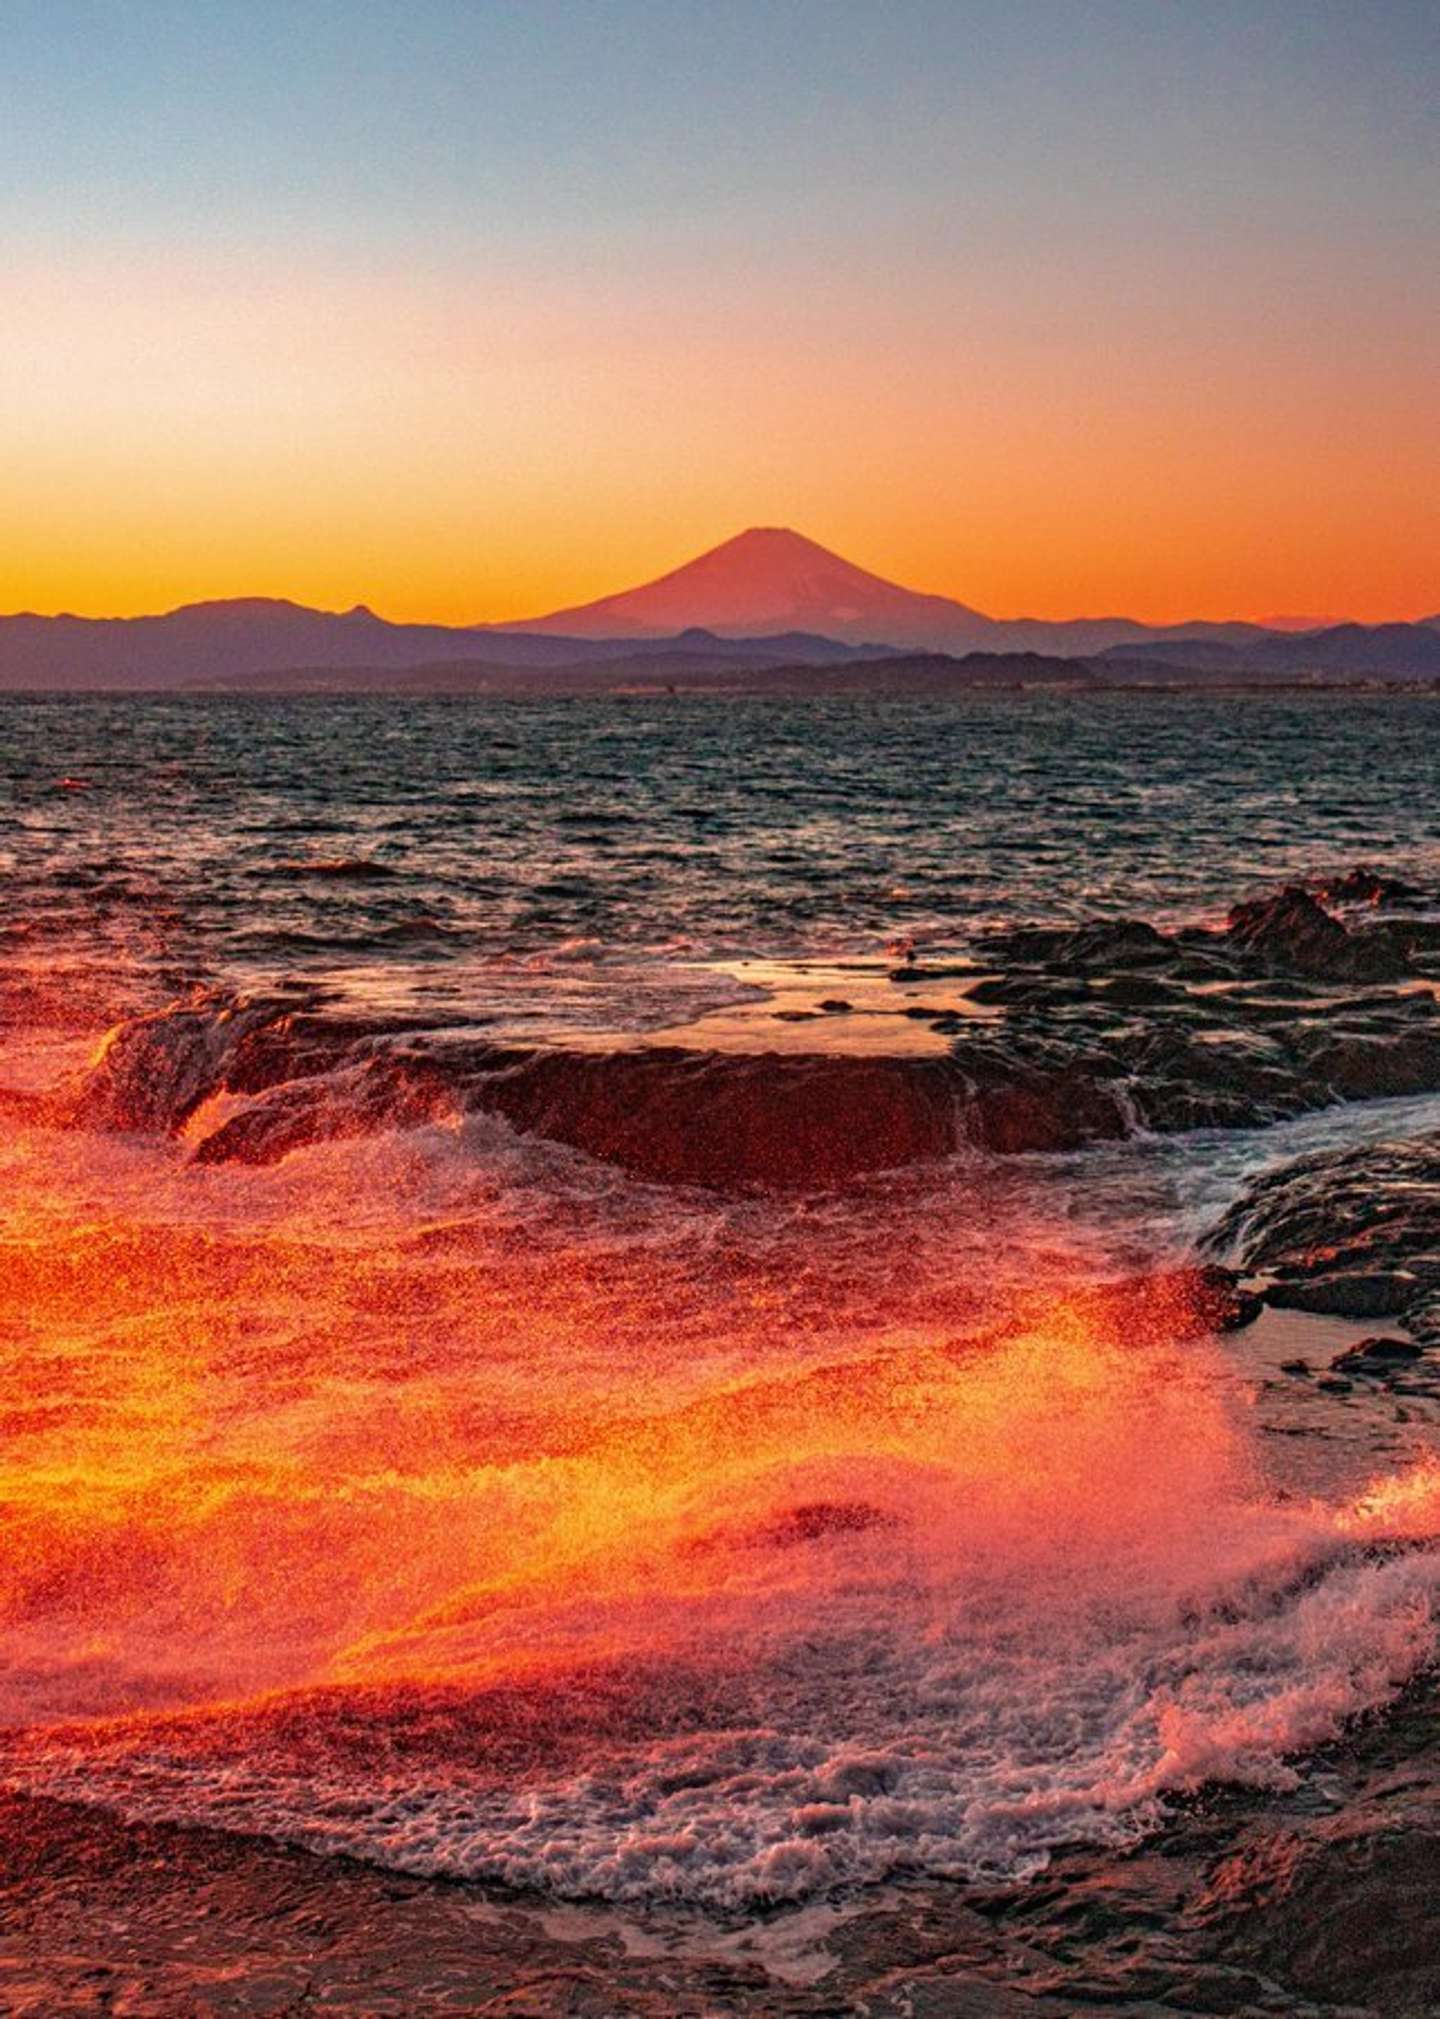 オレンジ色の波と空 そして富士山 夕暮れに染まる風景が切なく力強い 22年1月29日 エキサイトニュース